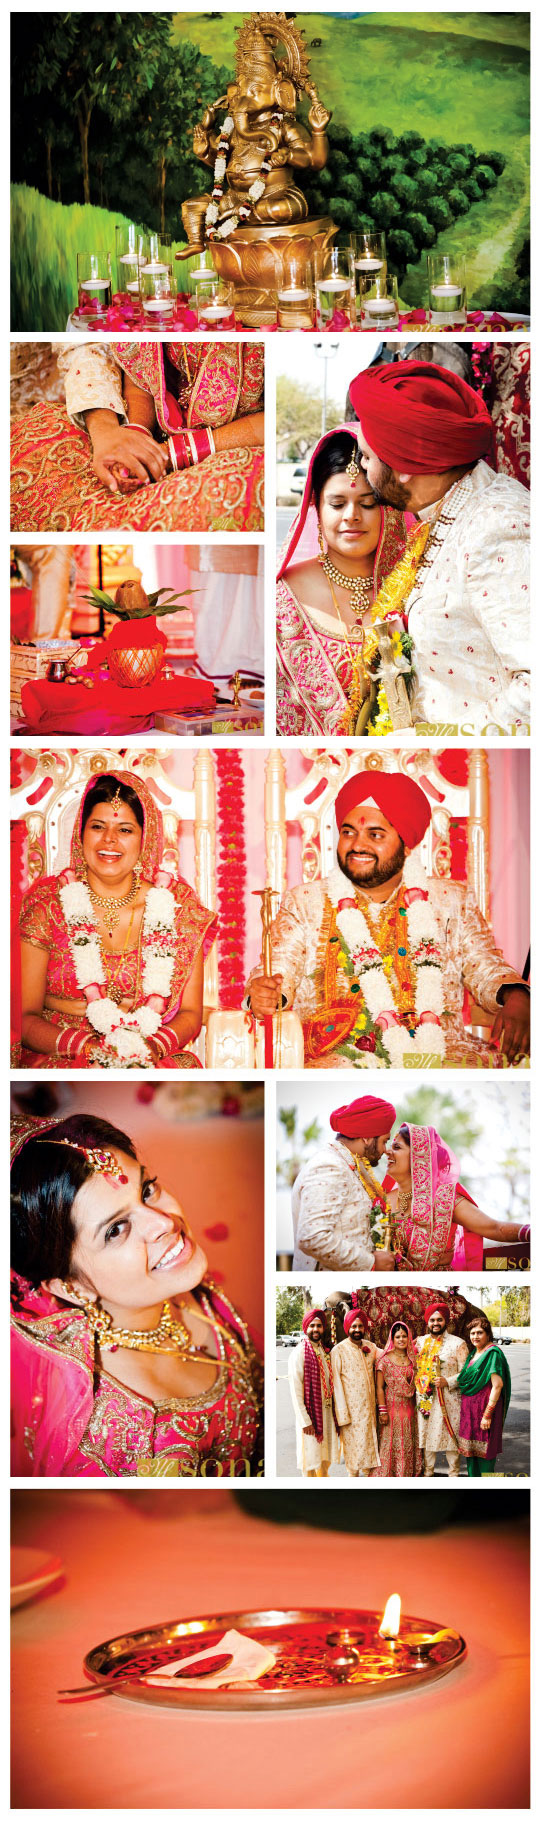 Sonya weds Vikram